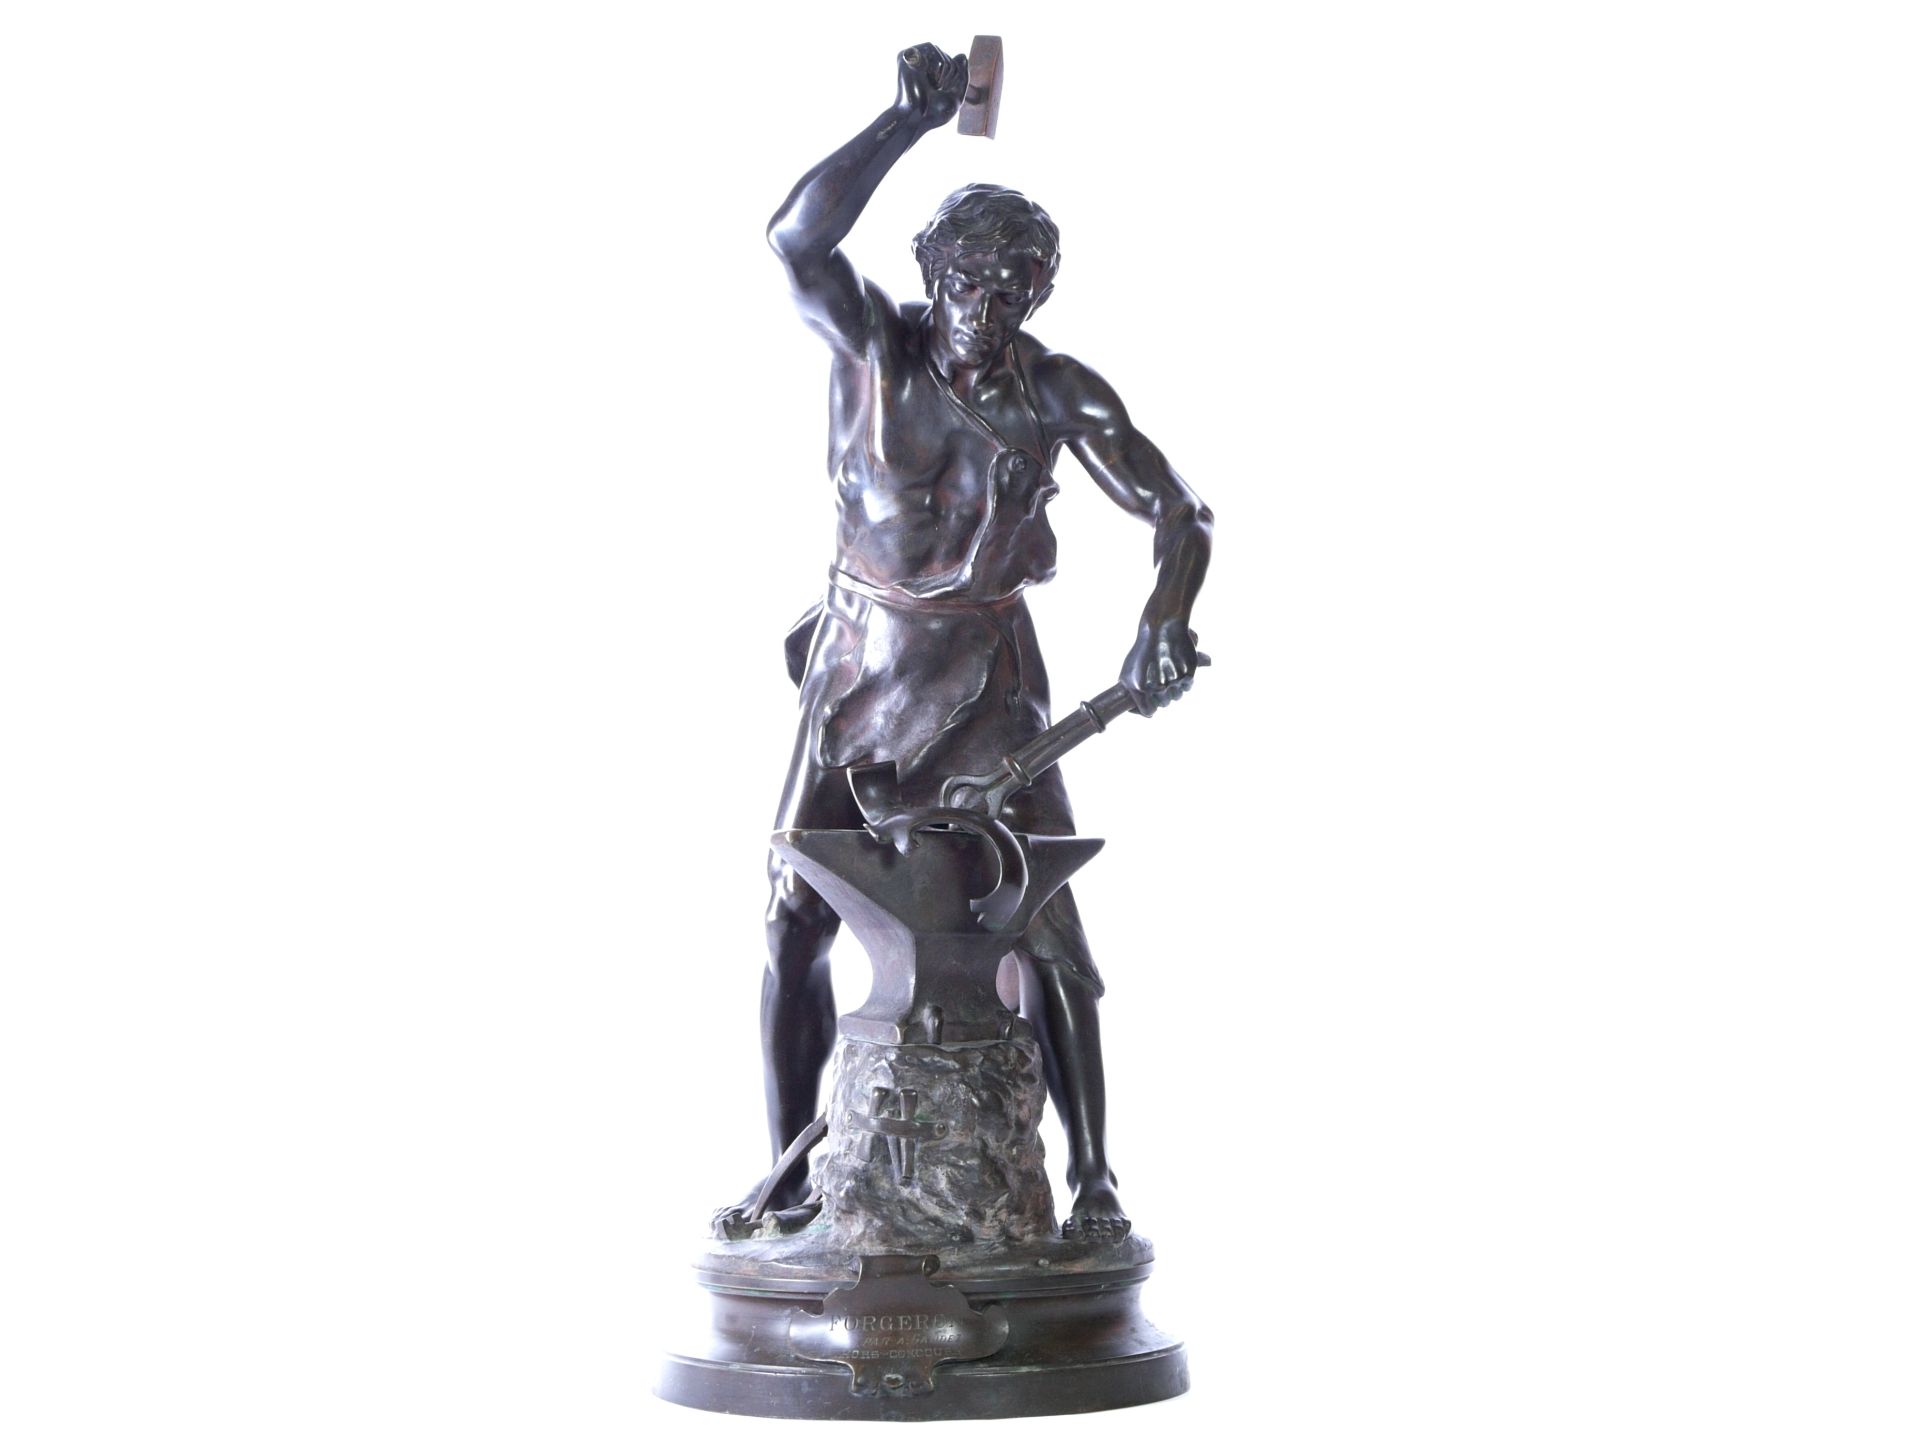 Gaudez, Adrien Etienne (1845-1902) - Große Bronze "Der Schmied"